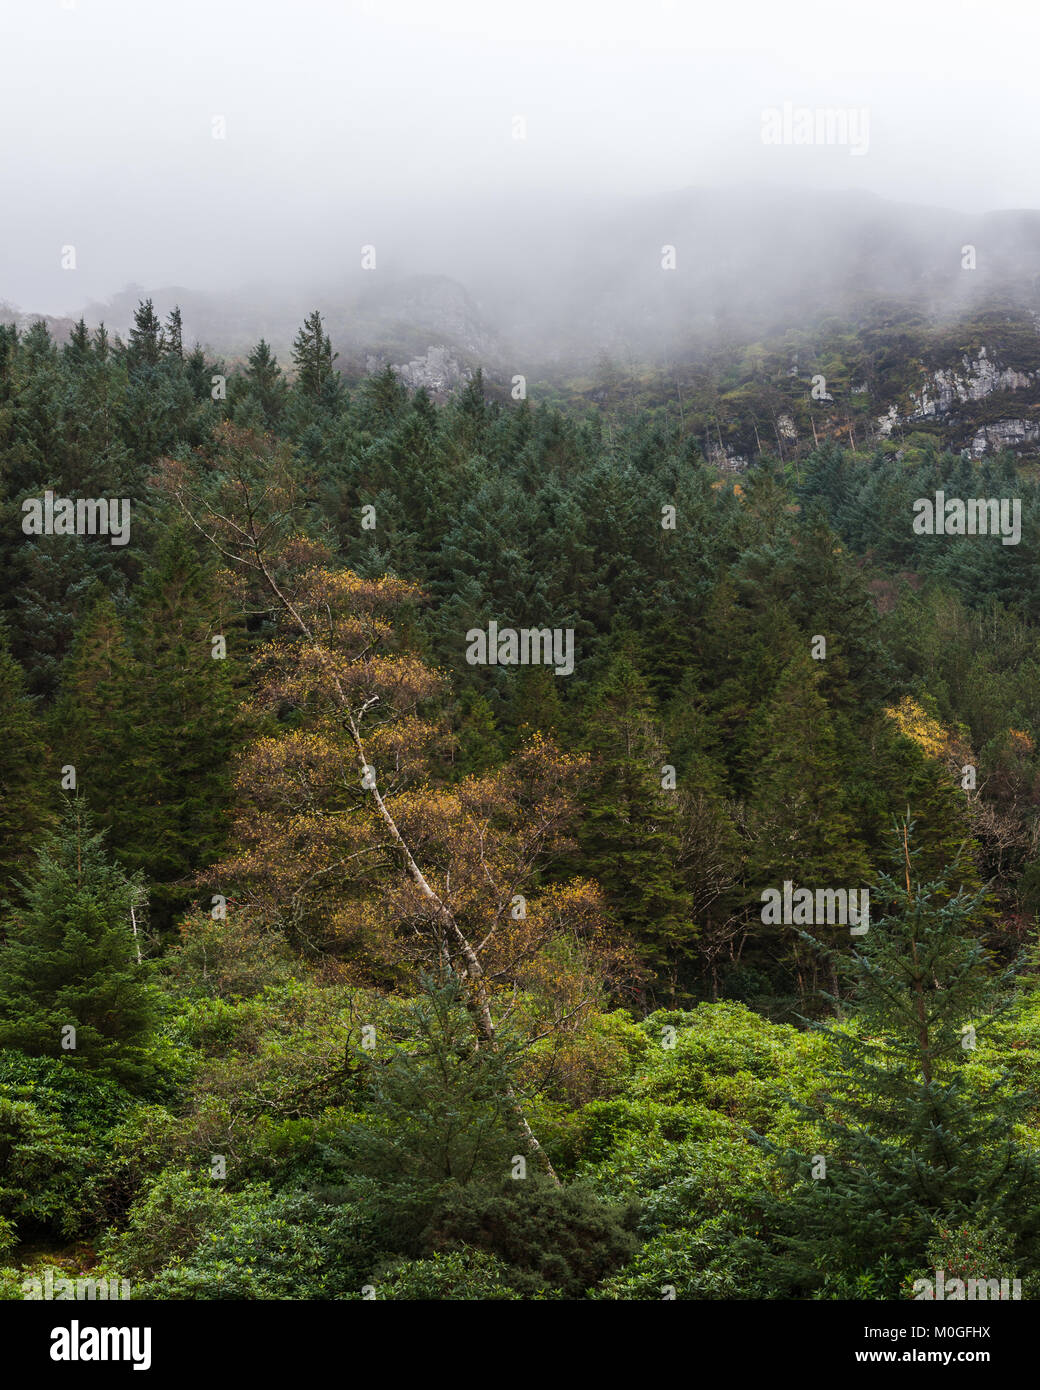 La nebbia rotola giù dalla collina sulla parte superiore di una foresta di pini. Vi è un unico albero a foglie decidue in primo piano con la caduta delle foglie. Foto Stock